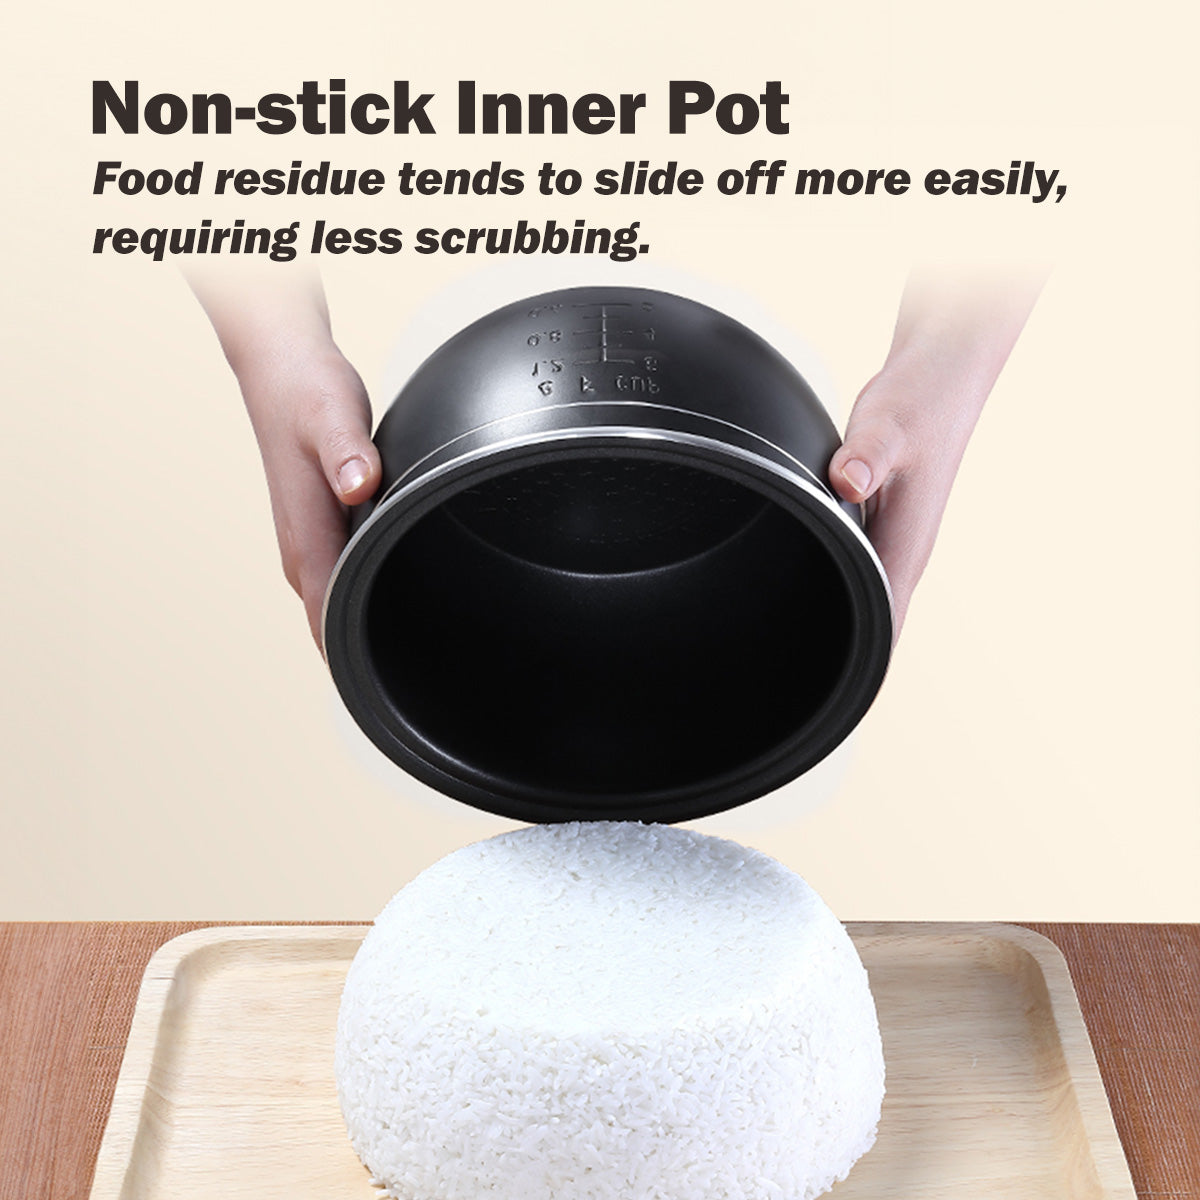 Multi-Purpose Digital Rice Cooker 1.2L with Non-stick Inner Pot (PPRC312)